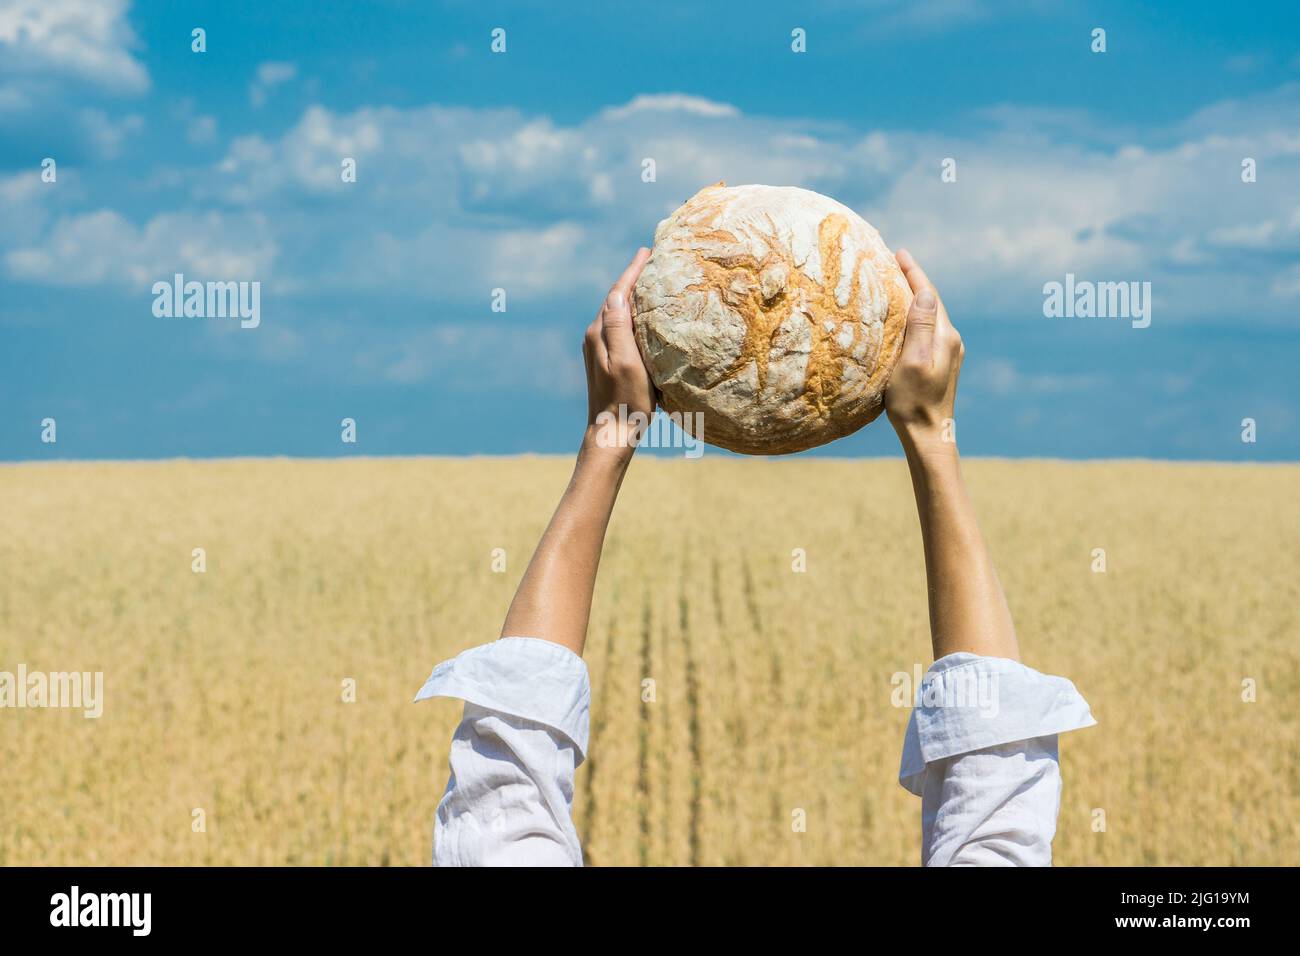 Des mains de femmes tenant un pain cuit maison au-dessus de sa tête sur un ciel bleu d'été dans un champ de blé. Concept de sécurité alimentaire mondiale. Banque D'Images